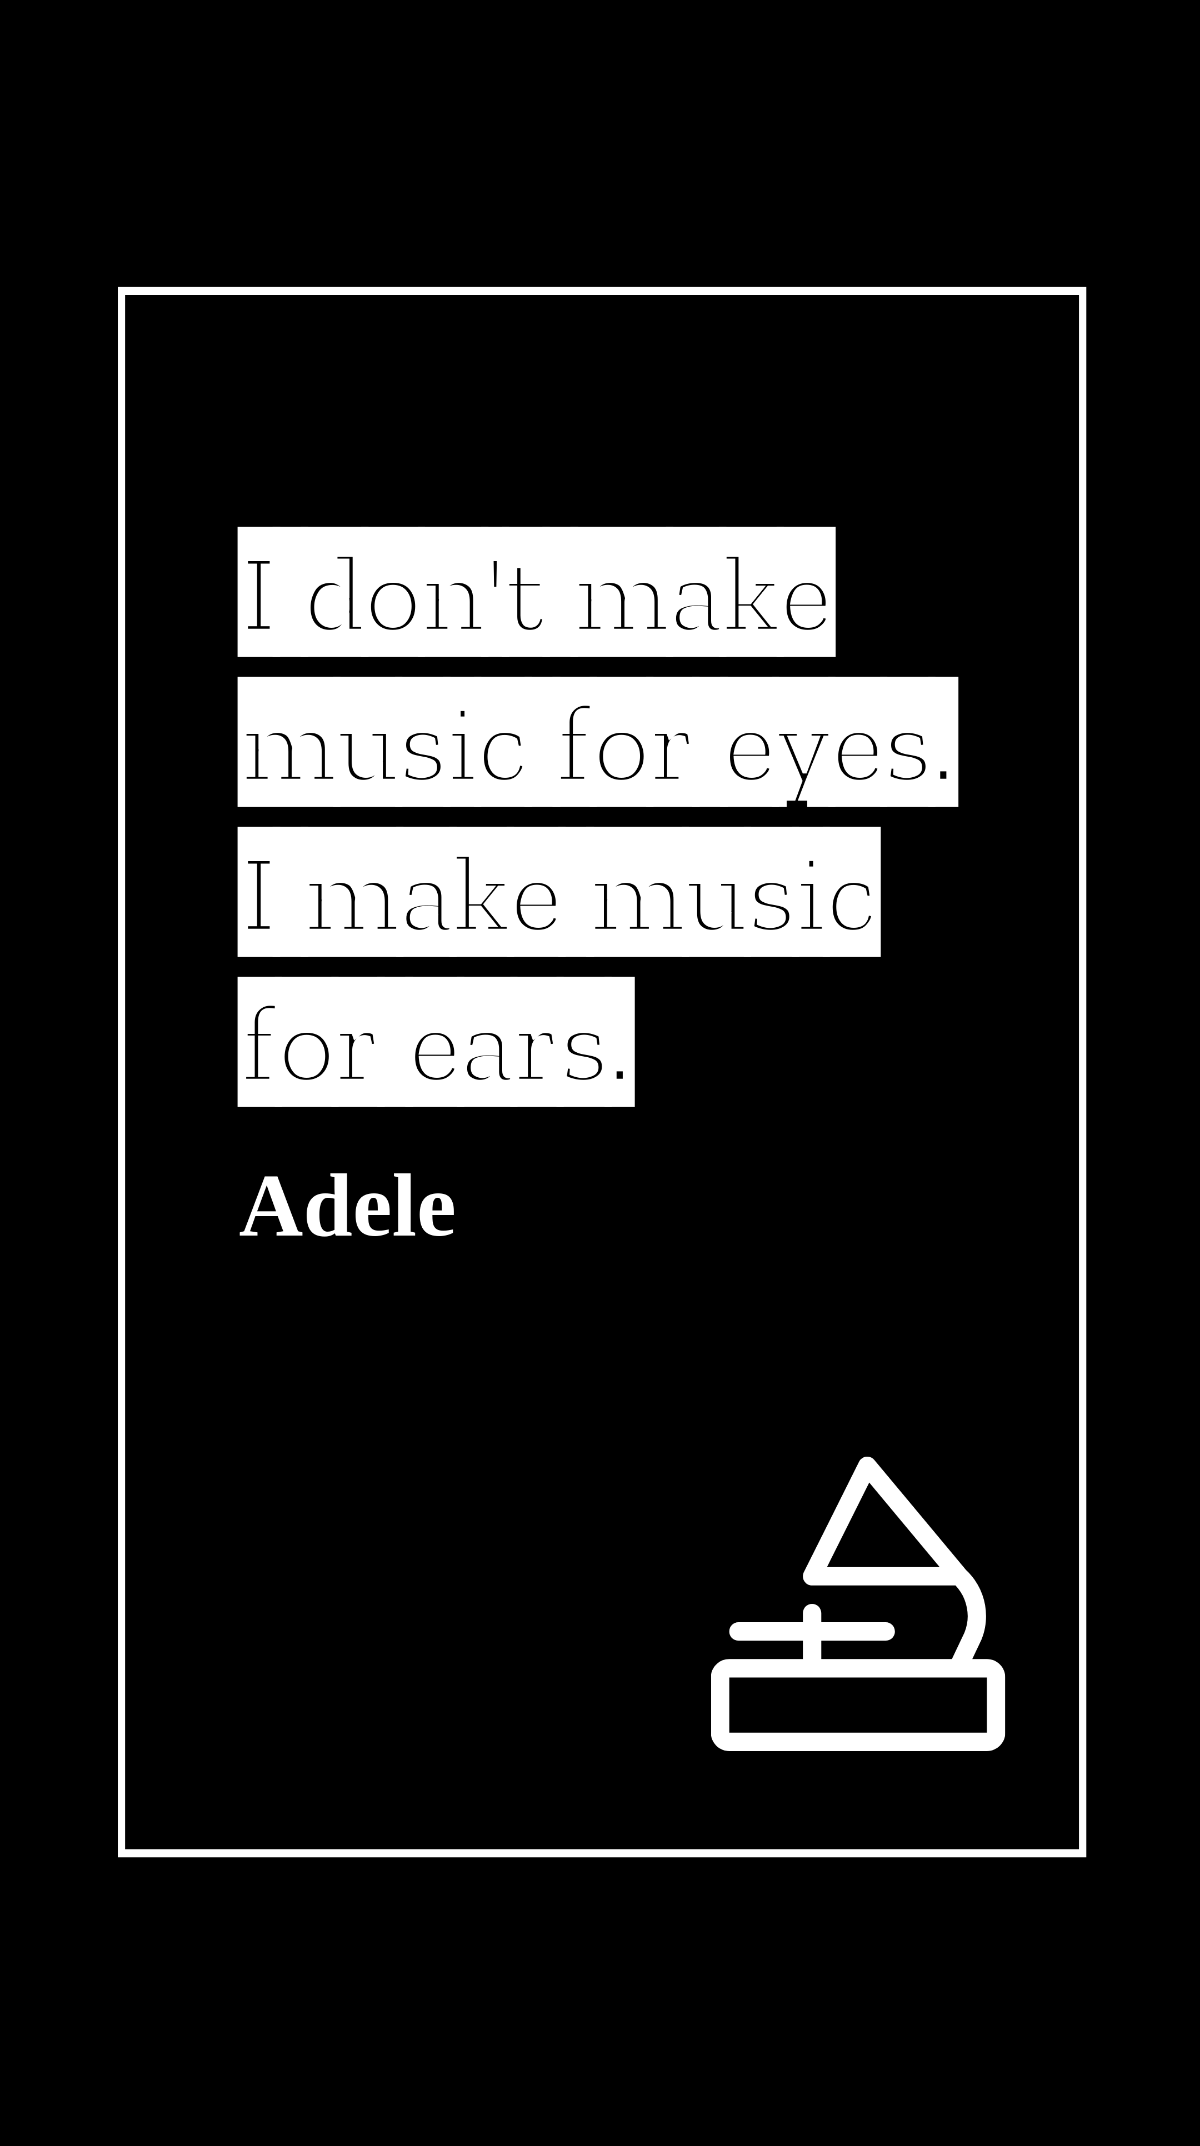 Adele - I don't make music for eyes. I make music for ears. Template